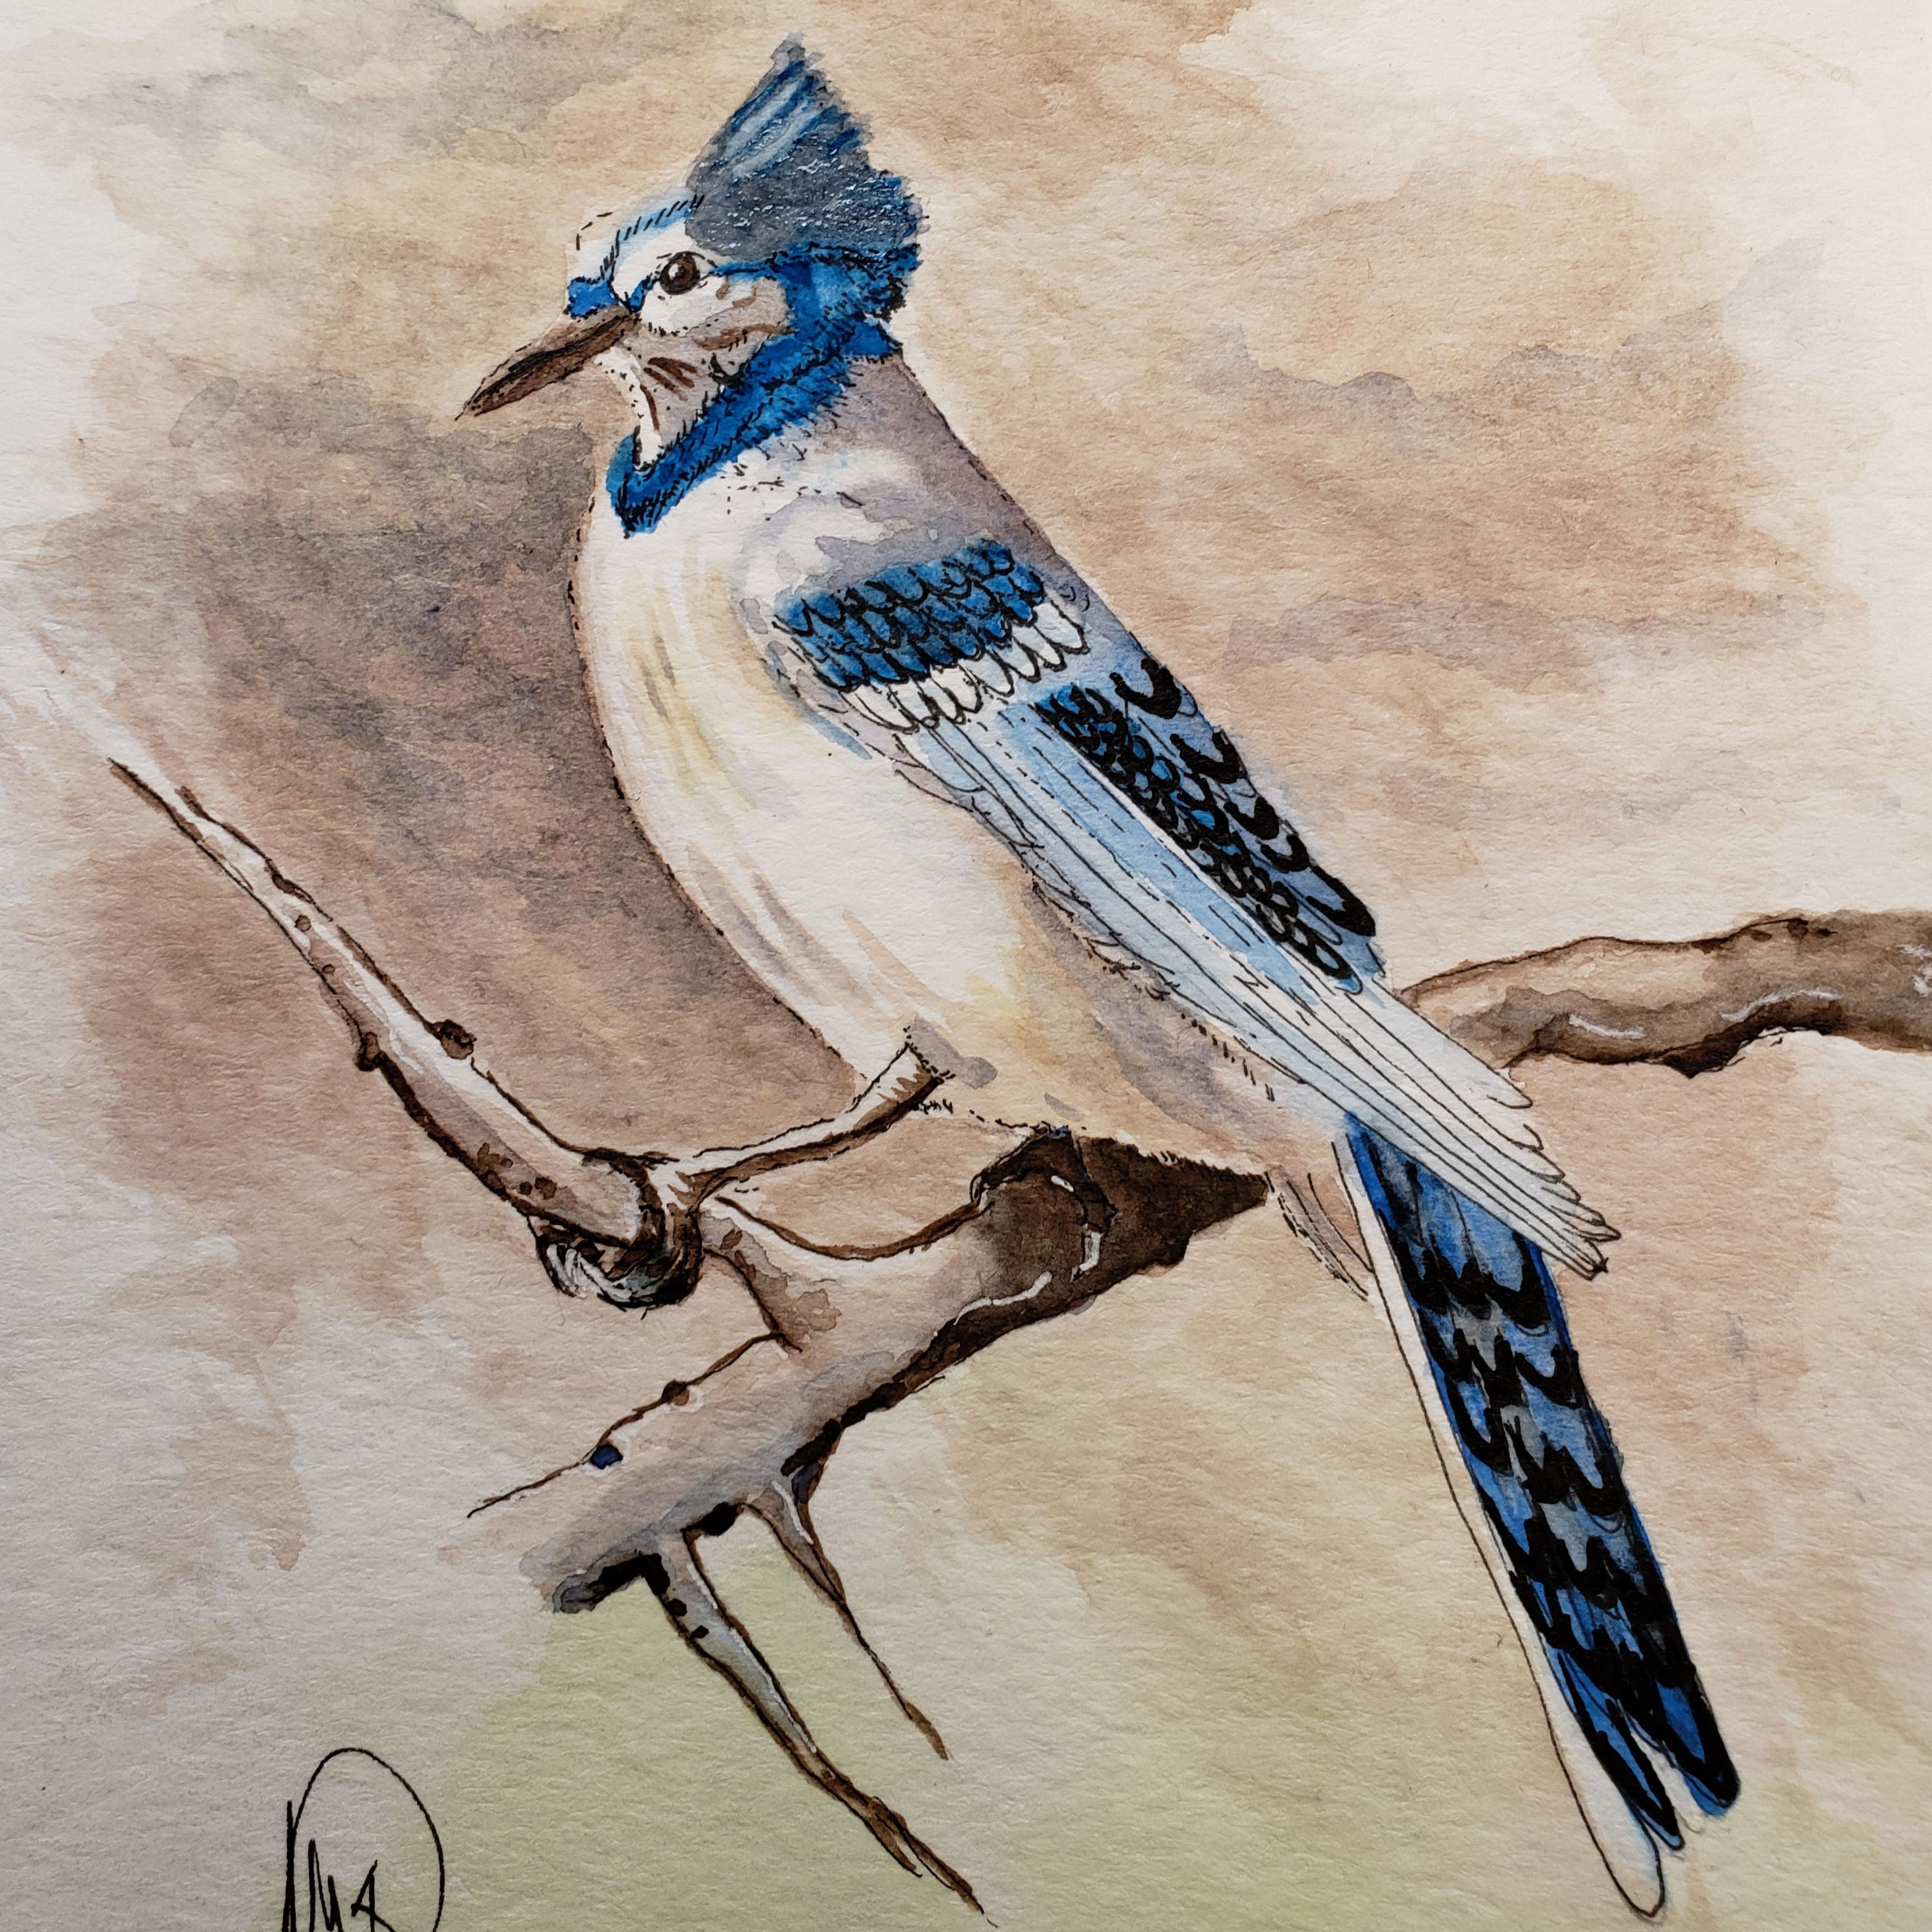 Dave's Bluebird Artwork